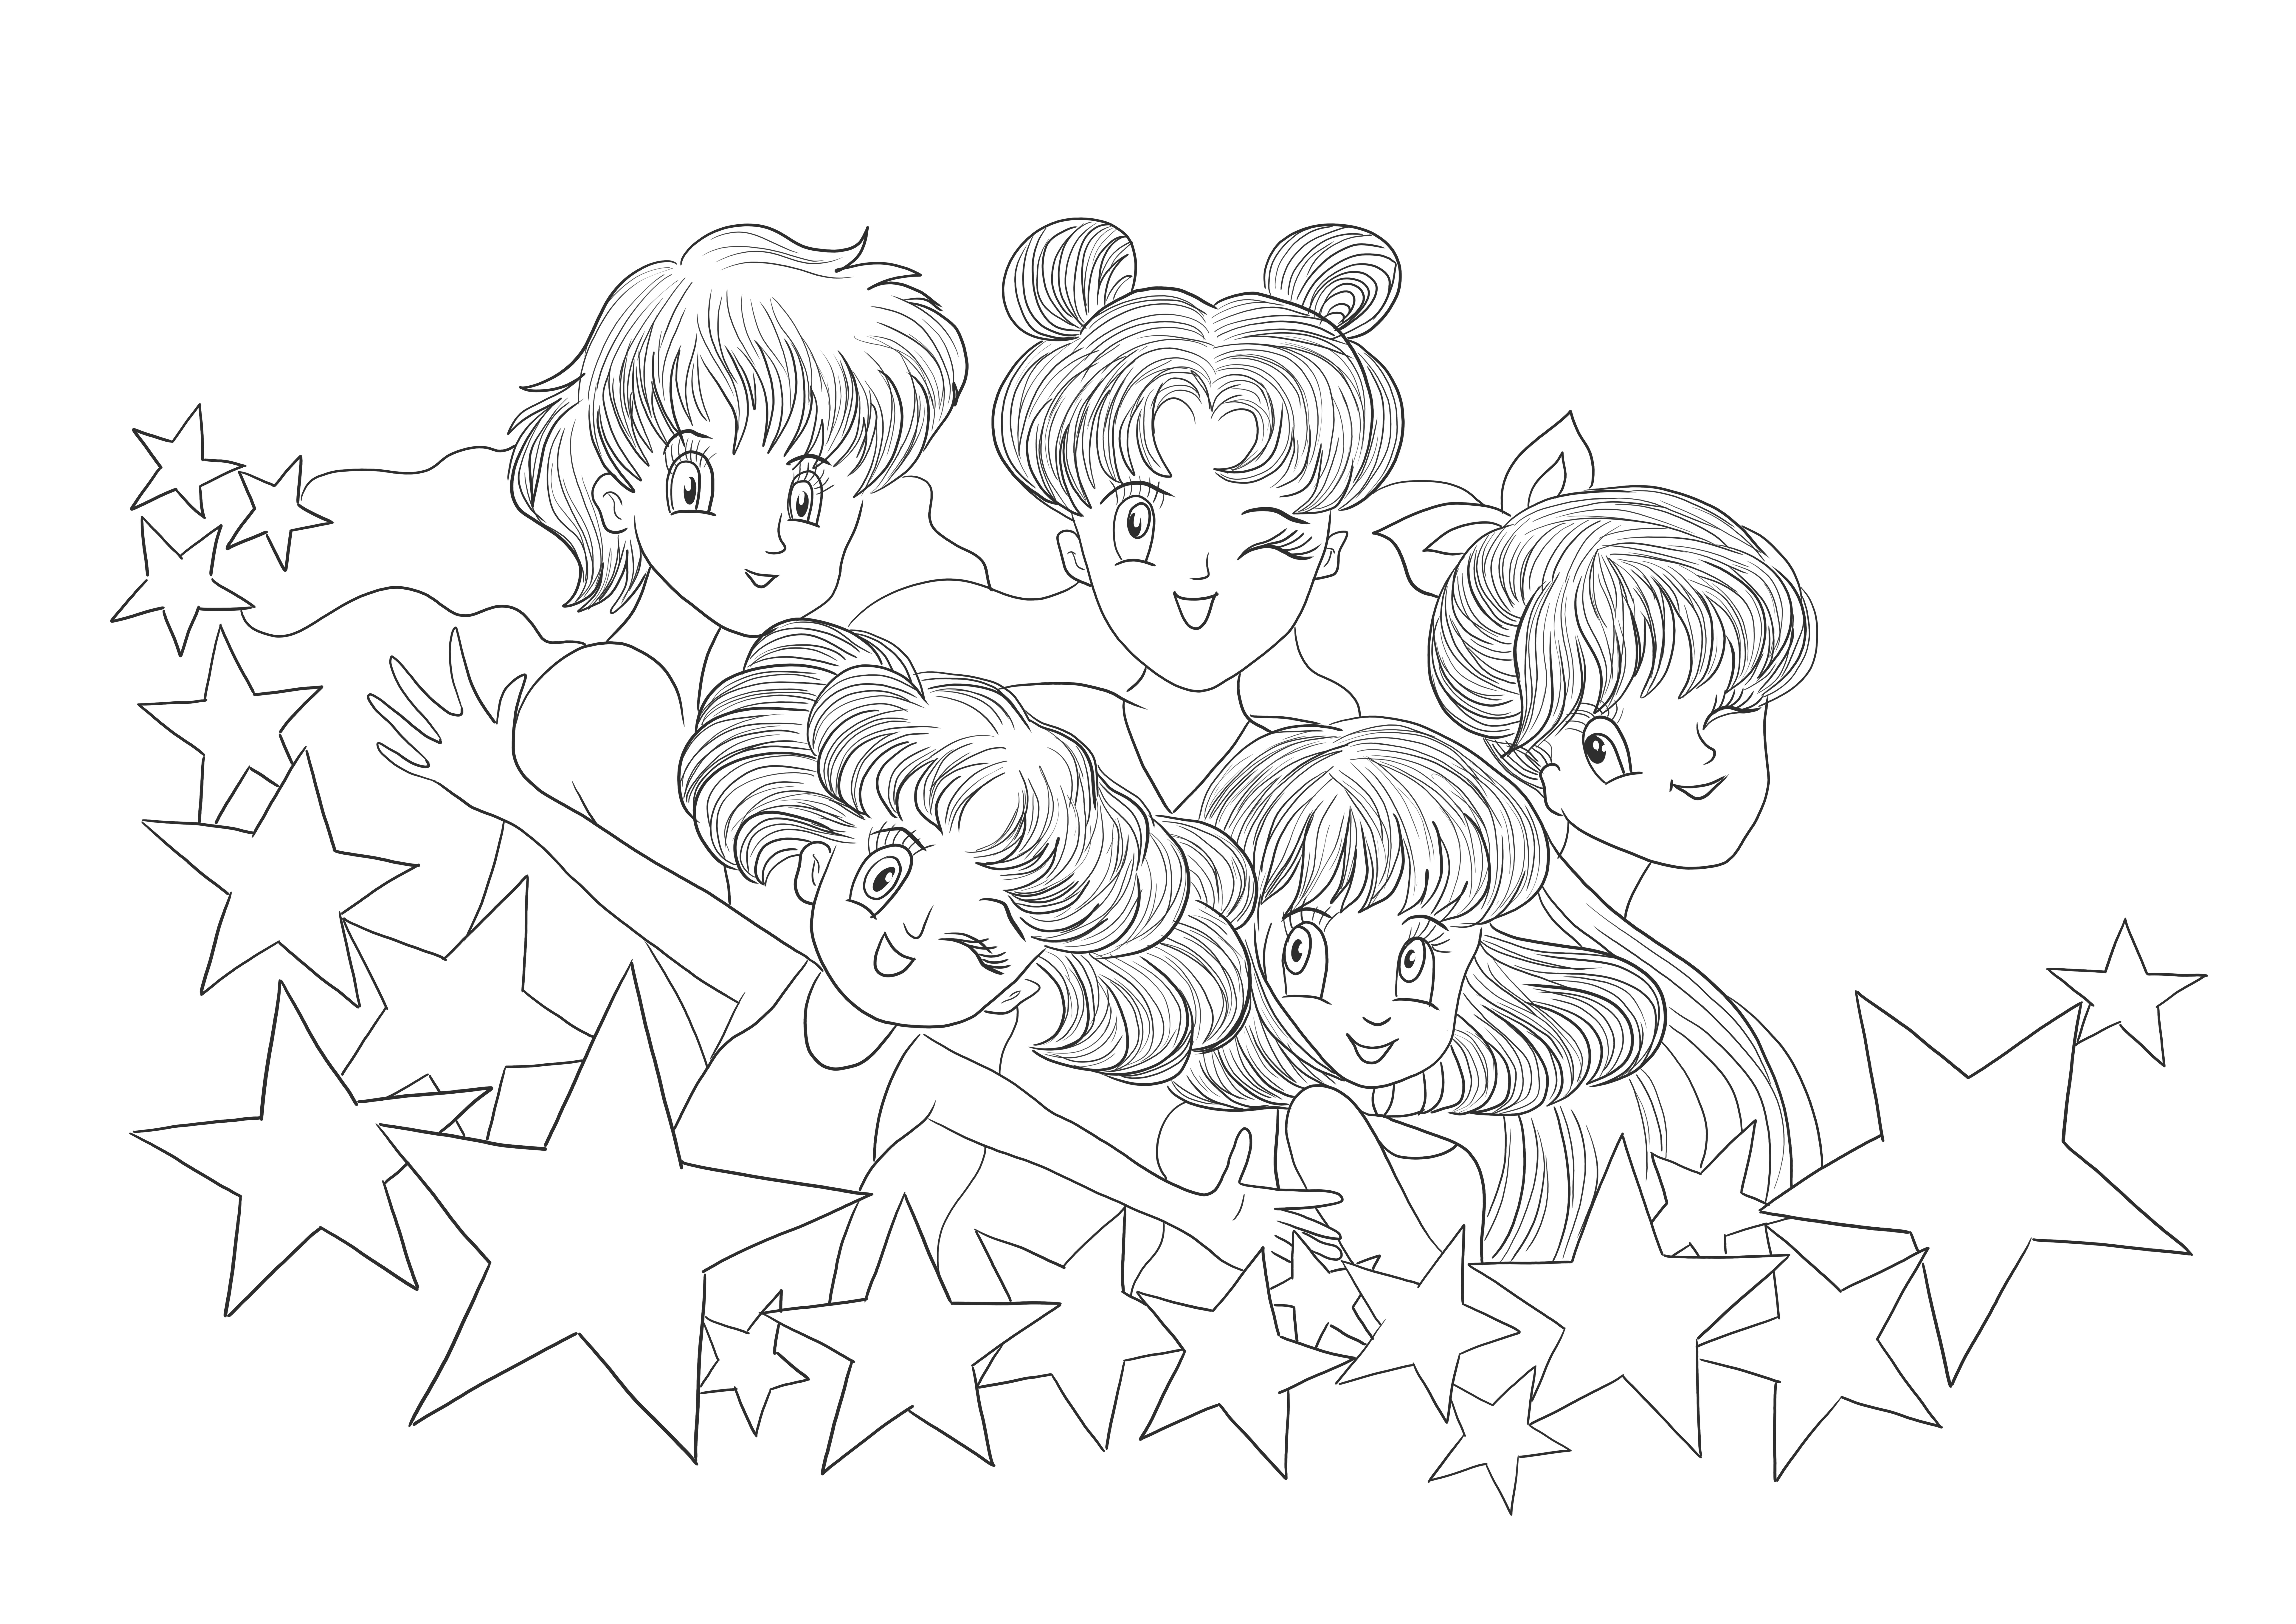 Bezpłatne obrazy do wydrukowania Sailor Moon do pobrania i wydrukowania dla dzieci do koloru.